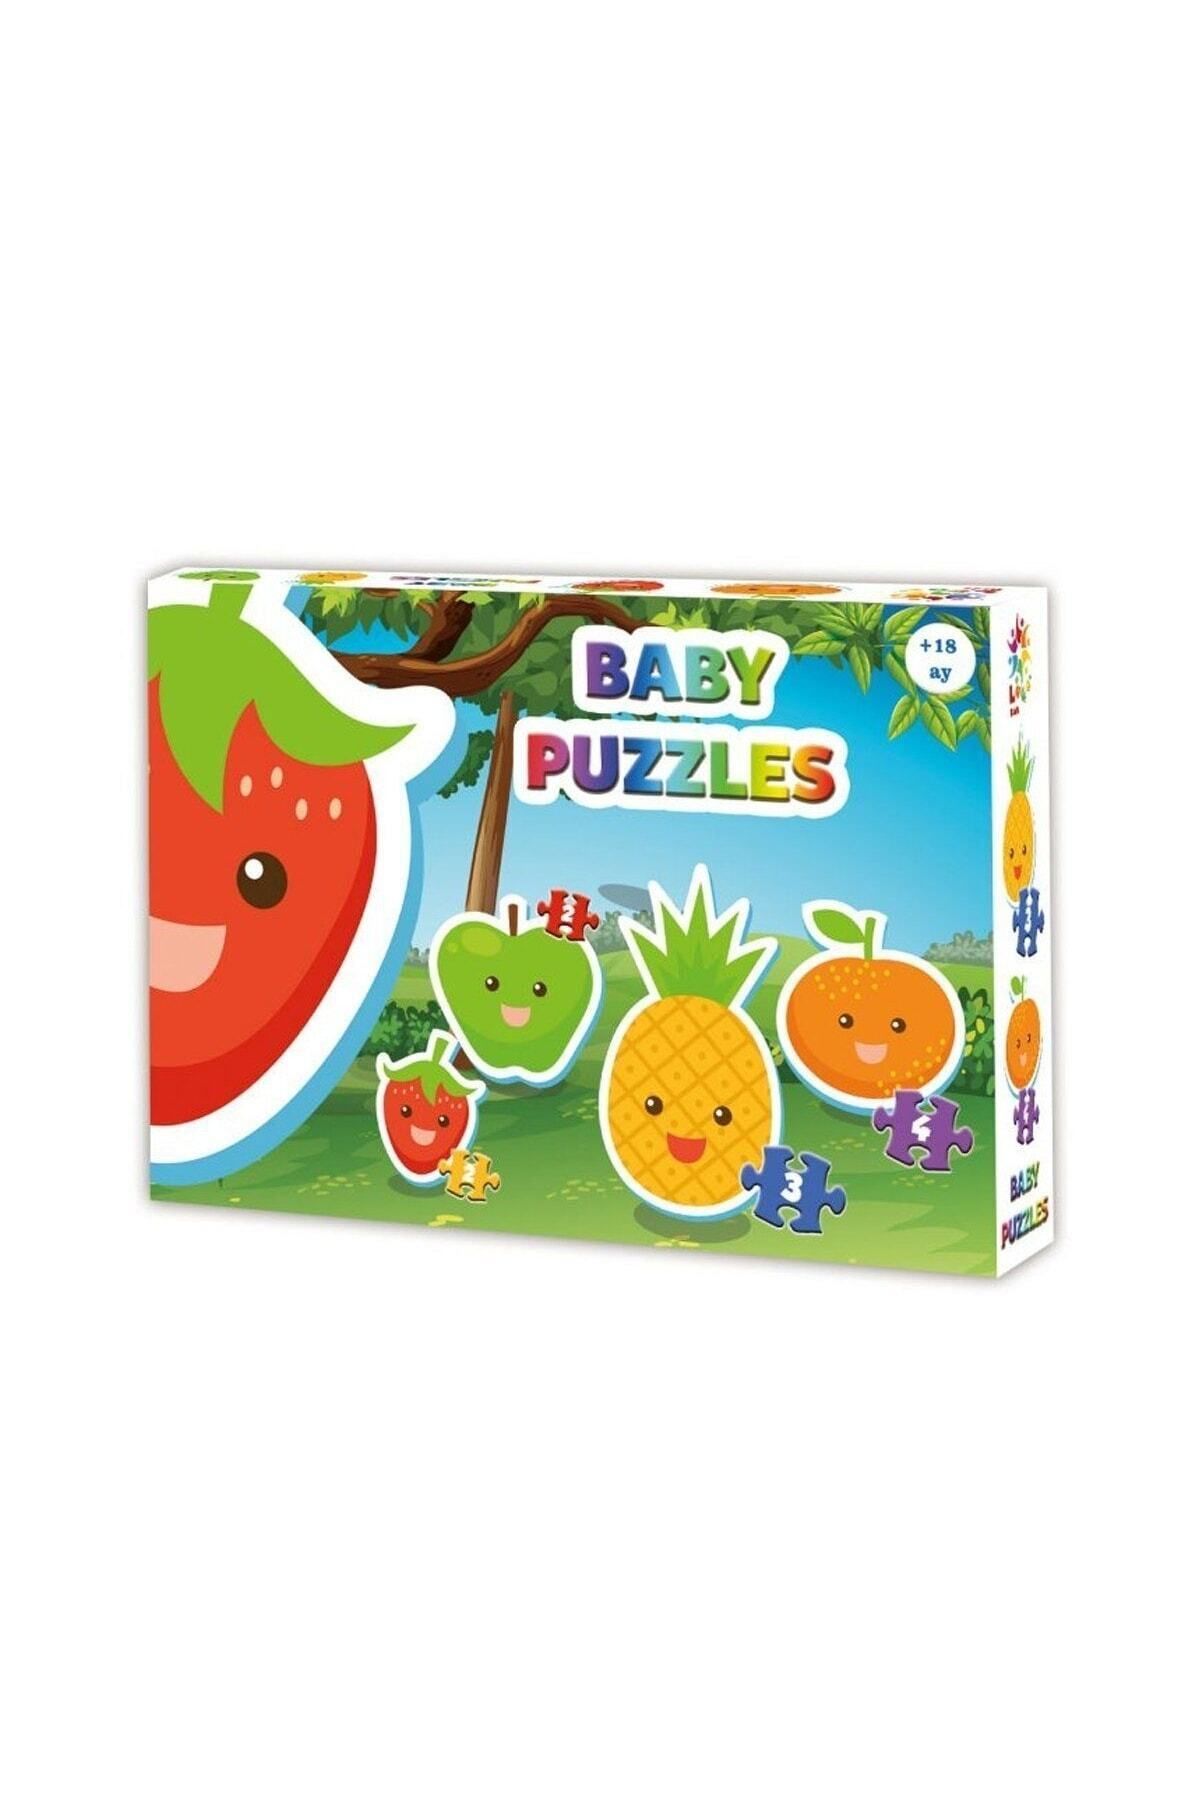 Muhcu Home Lcbyb002 Laço Kids Baby Puzzles - Meyveler / 2 2 3 4 Parça Puzzle / 18 Ay